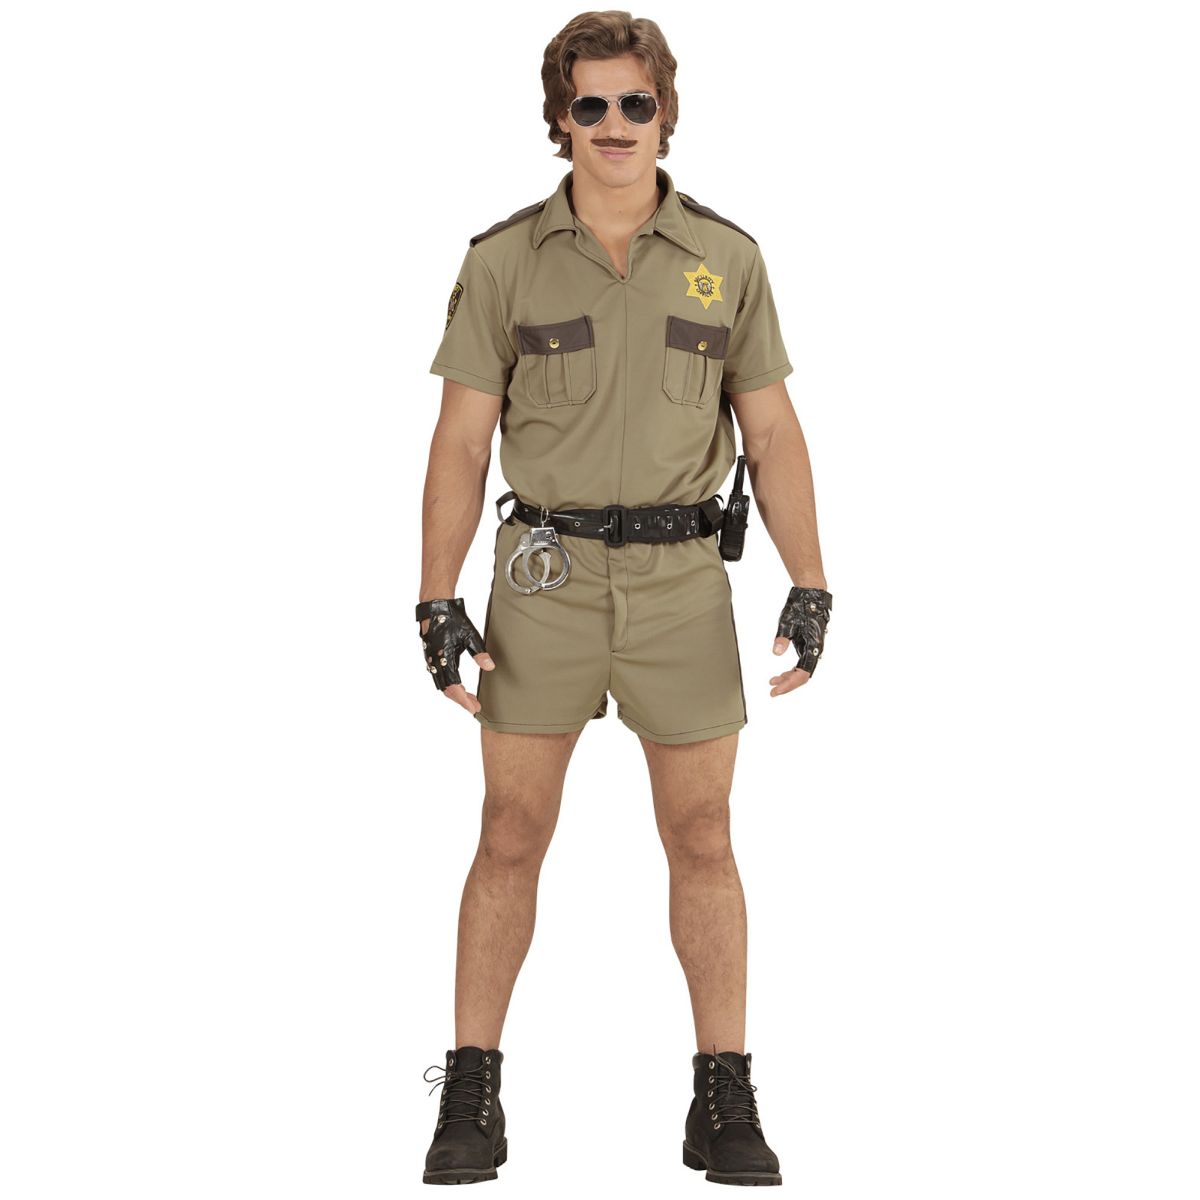 Kalifornischer Highway Streifenpolizist Polizistenkostüm Herren Cop Outfit  Hemd, Shorts, Gürtel Gr. S